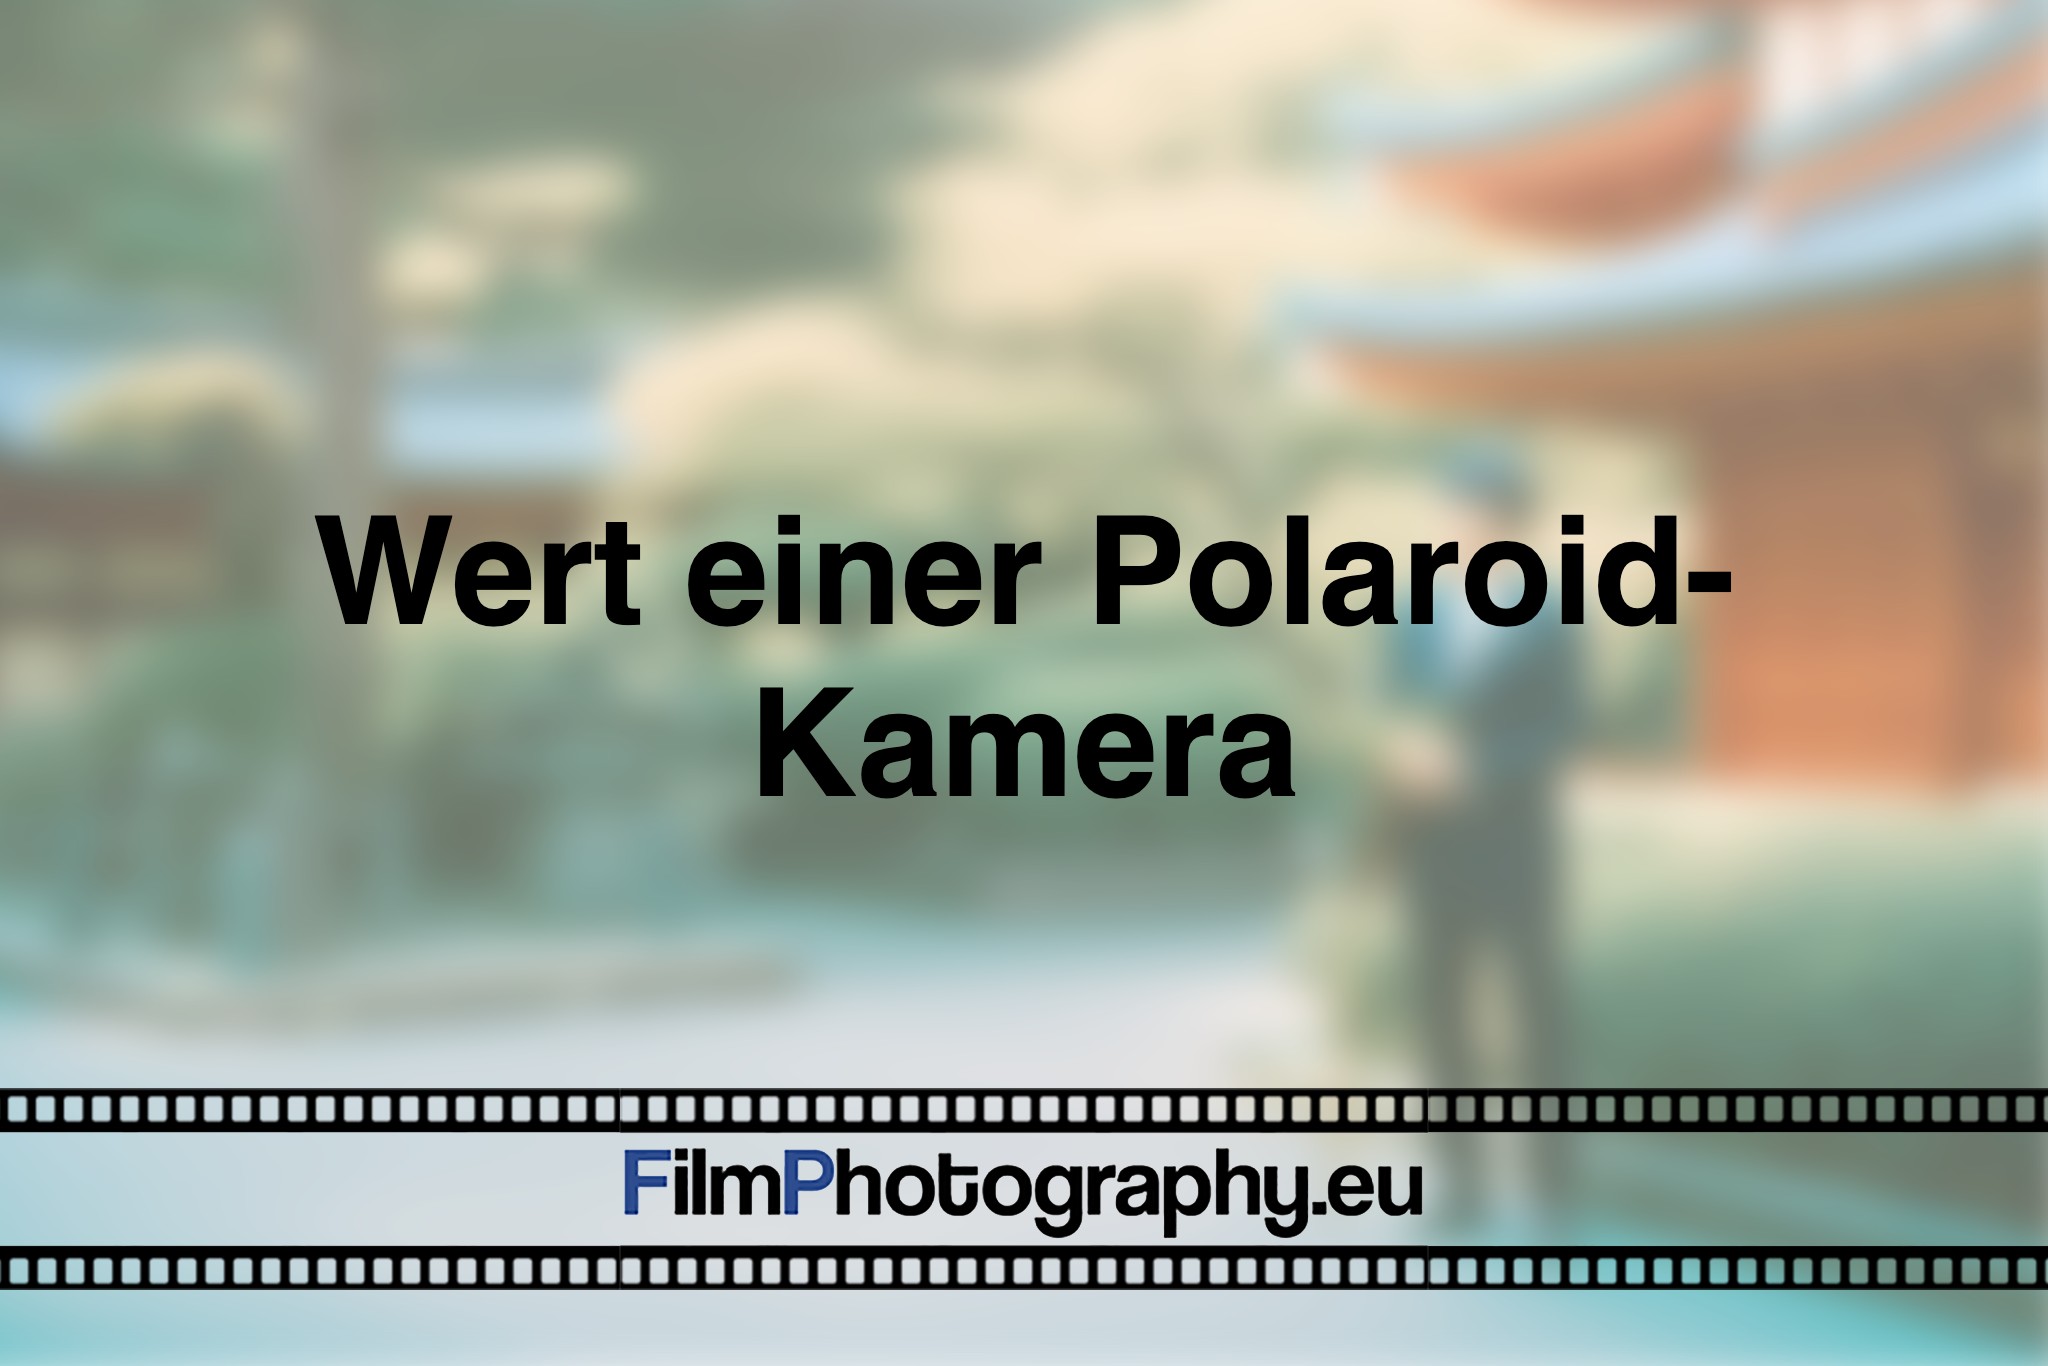 wert-einer-polaroid-kamera-photo-bnv